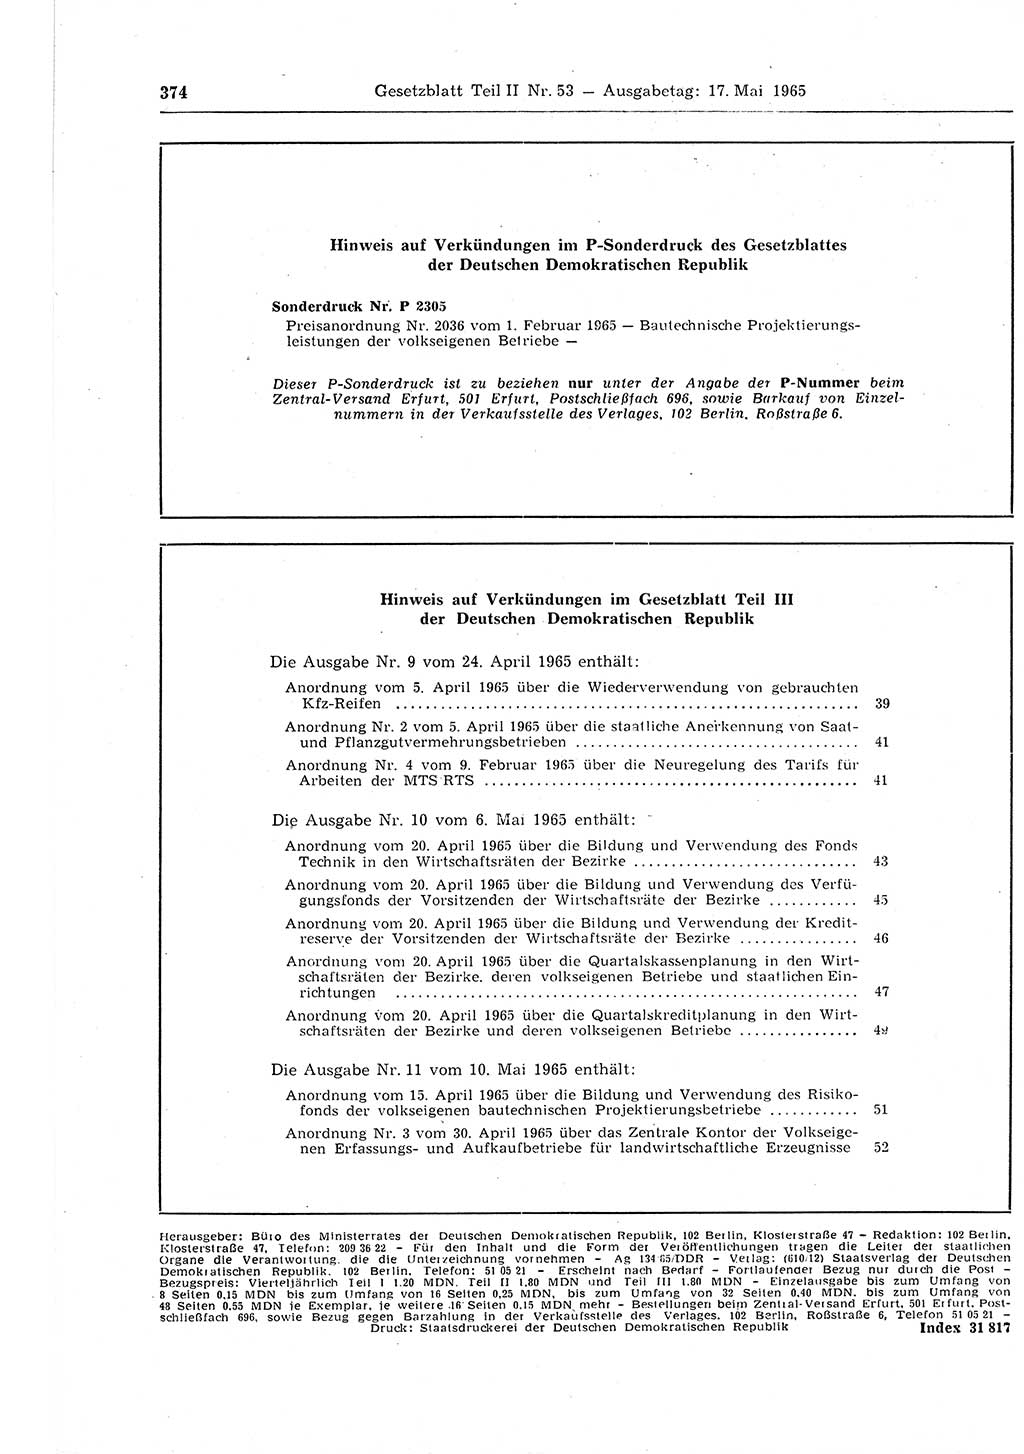 Gesetzblatt (GBl.) der Deutschen Demokratischen Republik (DDR) Teil ⅠⅠ 1965, Seite 374 (GBl. DDR ⅠⅠ 1965, S. 374)